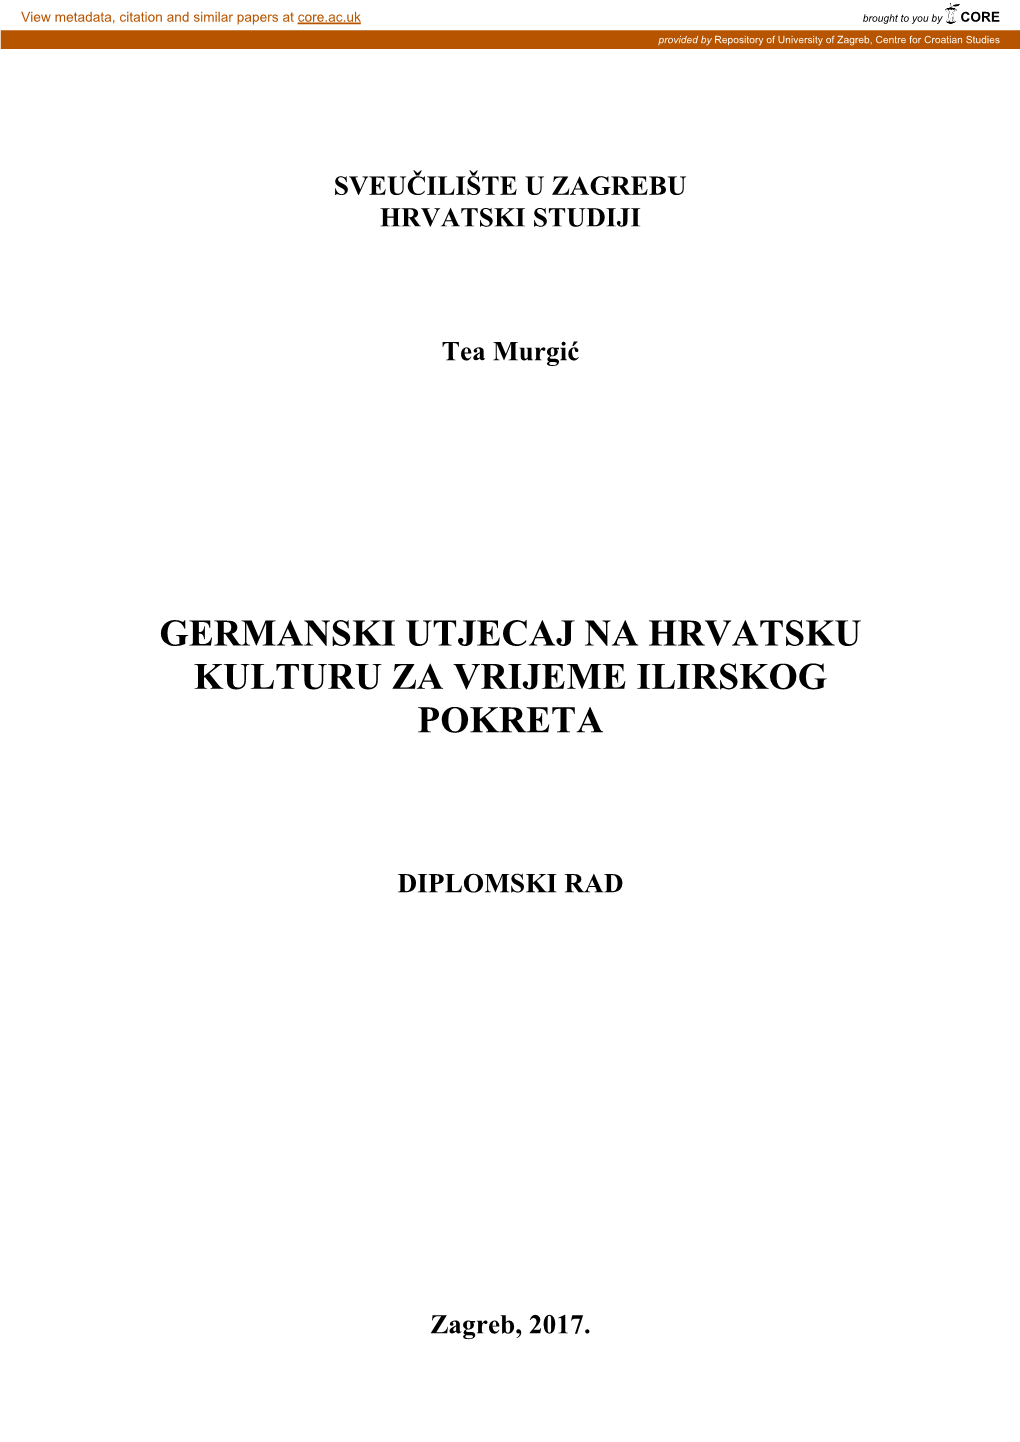 Germanski Utjecaj Na Hrvatsku Kulturu Za Vrijeme Ilirskog Pokreta